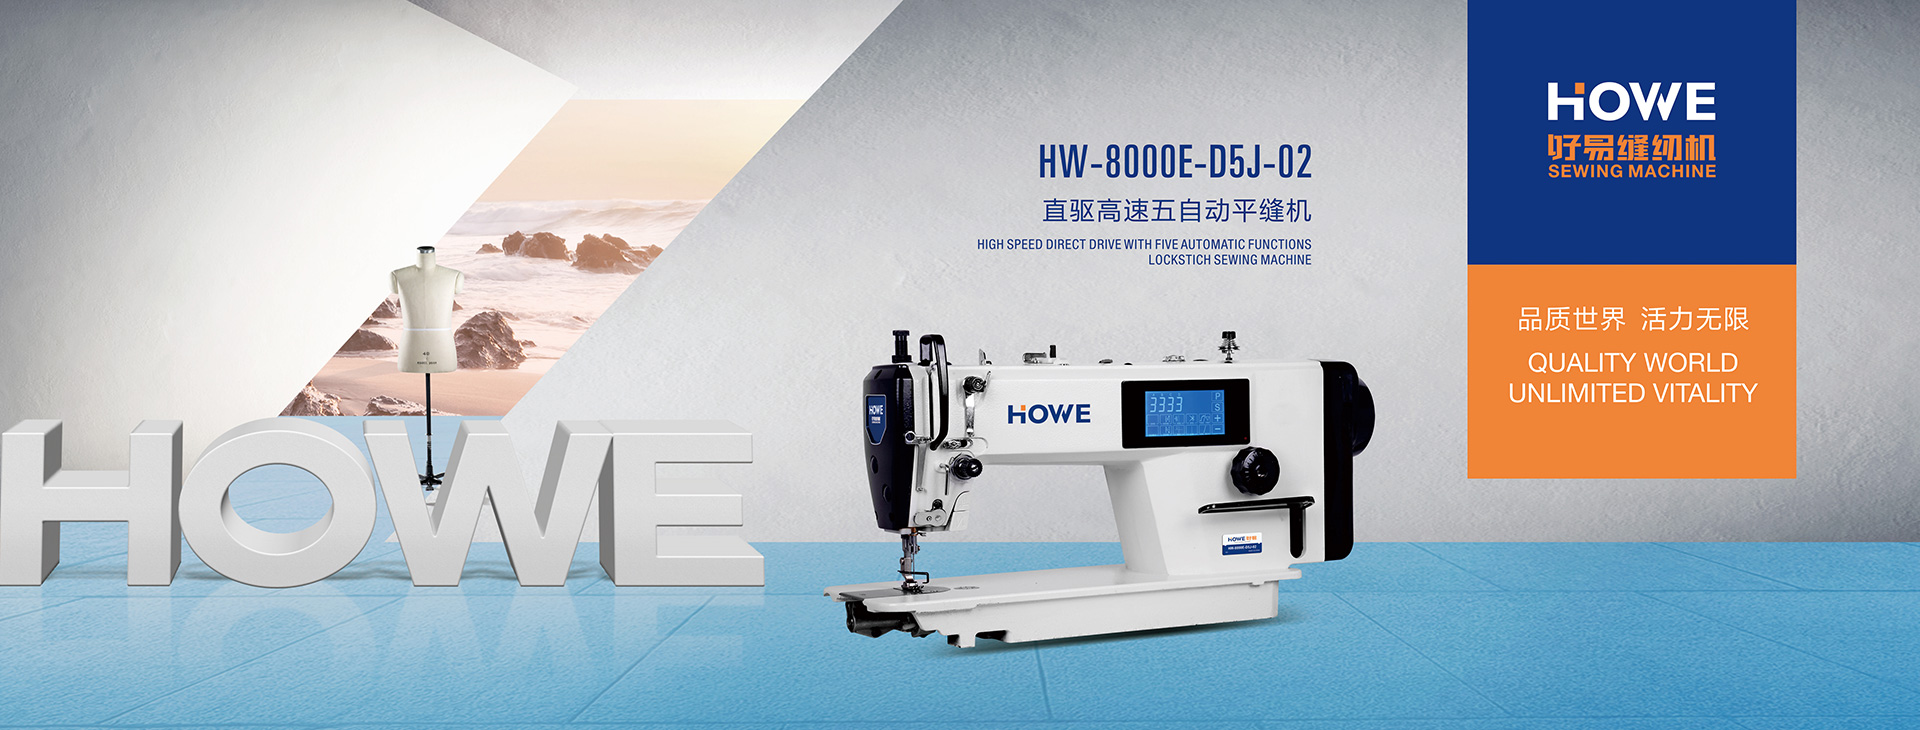 HOWE Sewing Machine HOWE Sewing Machine Co Ltd